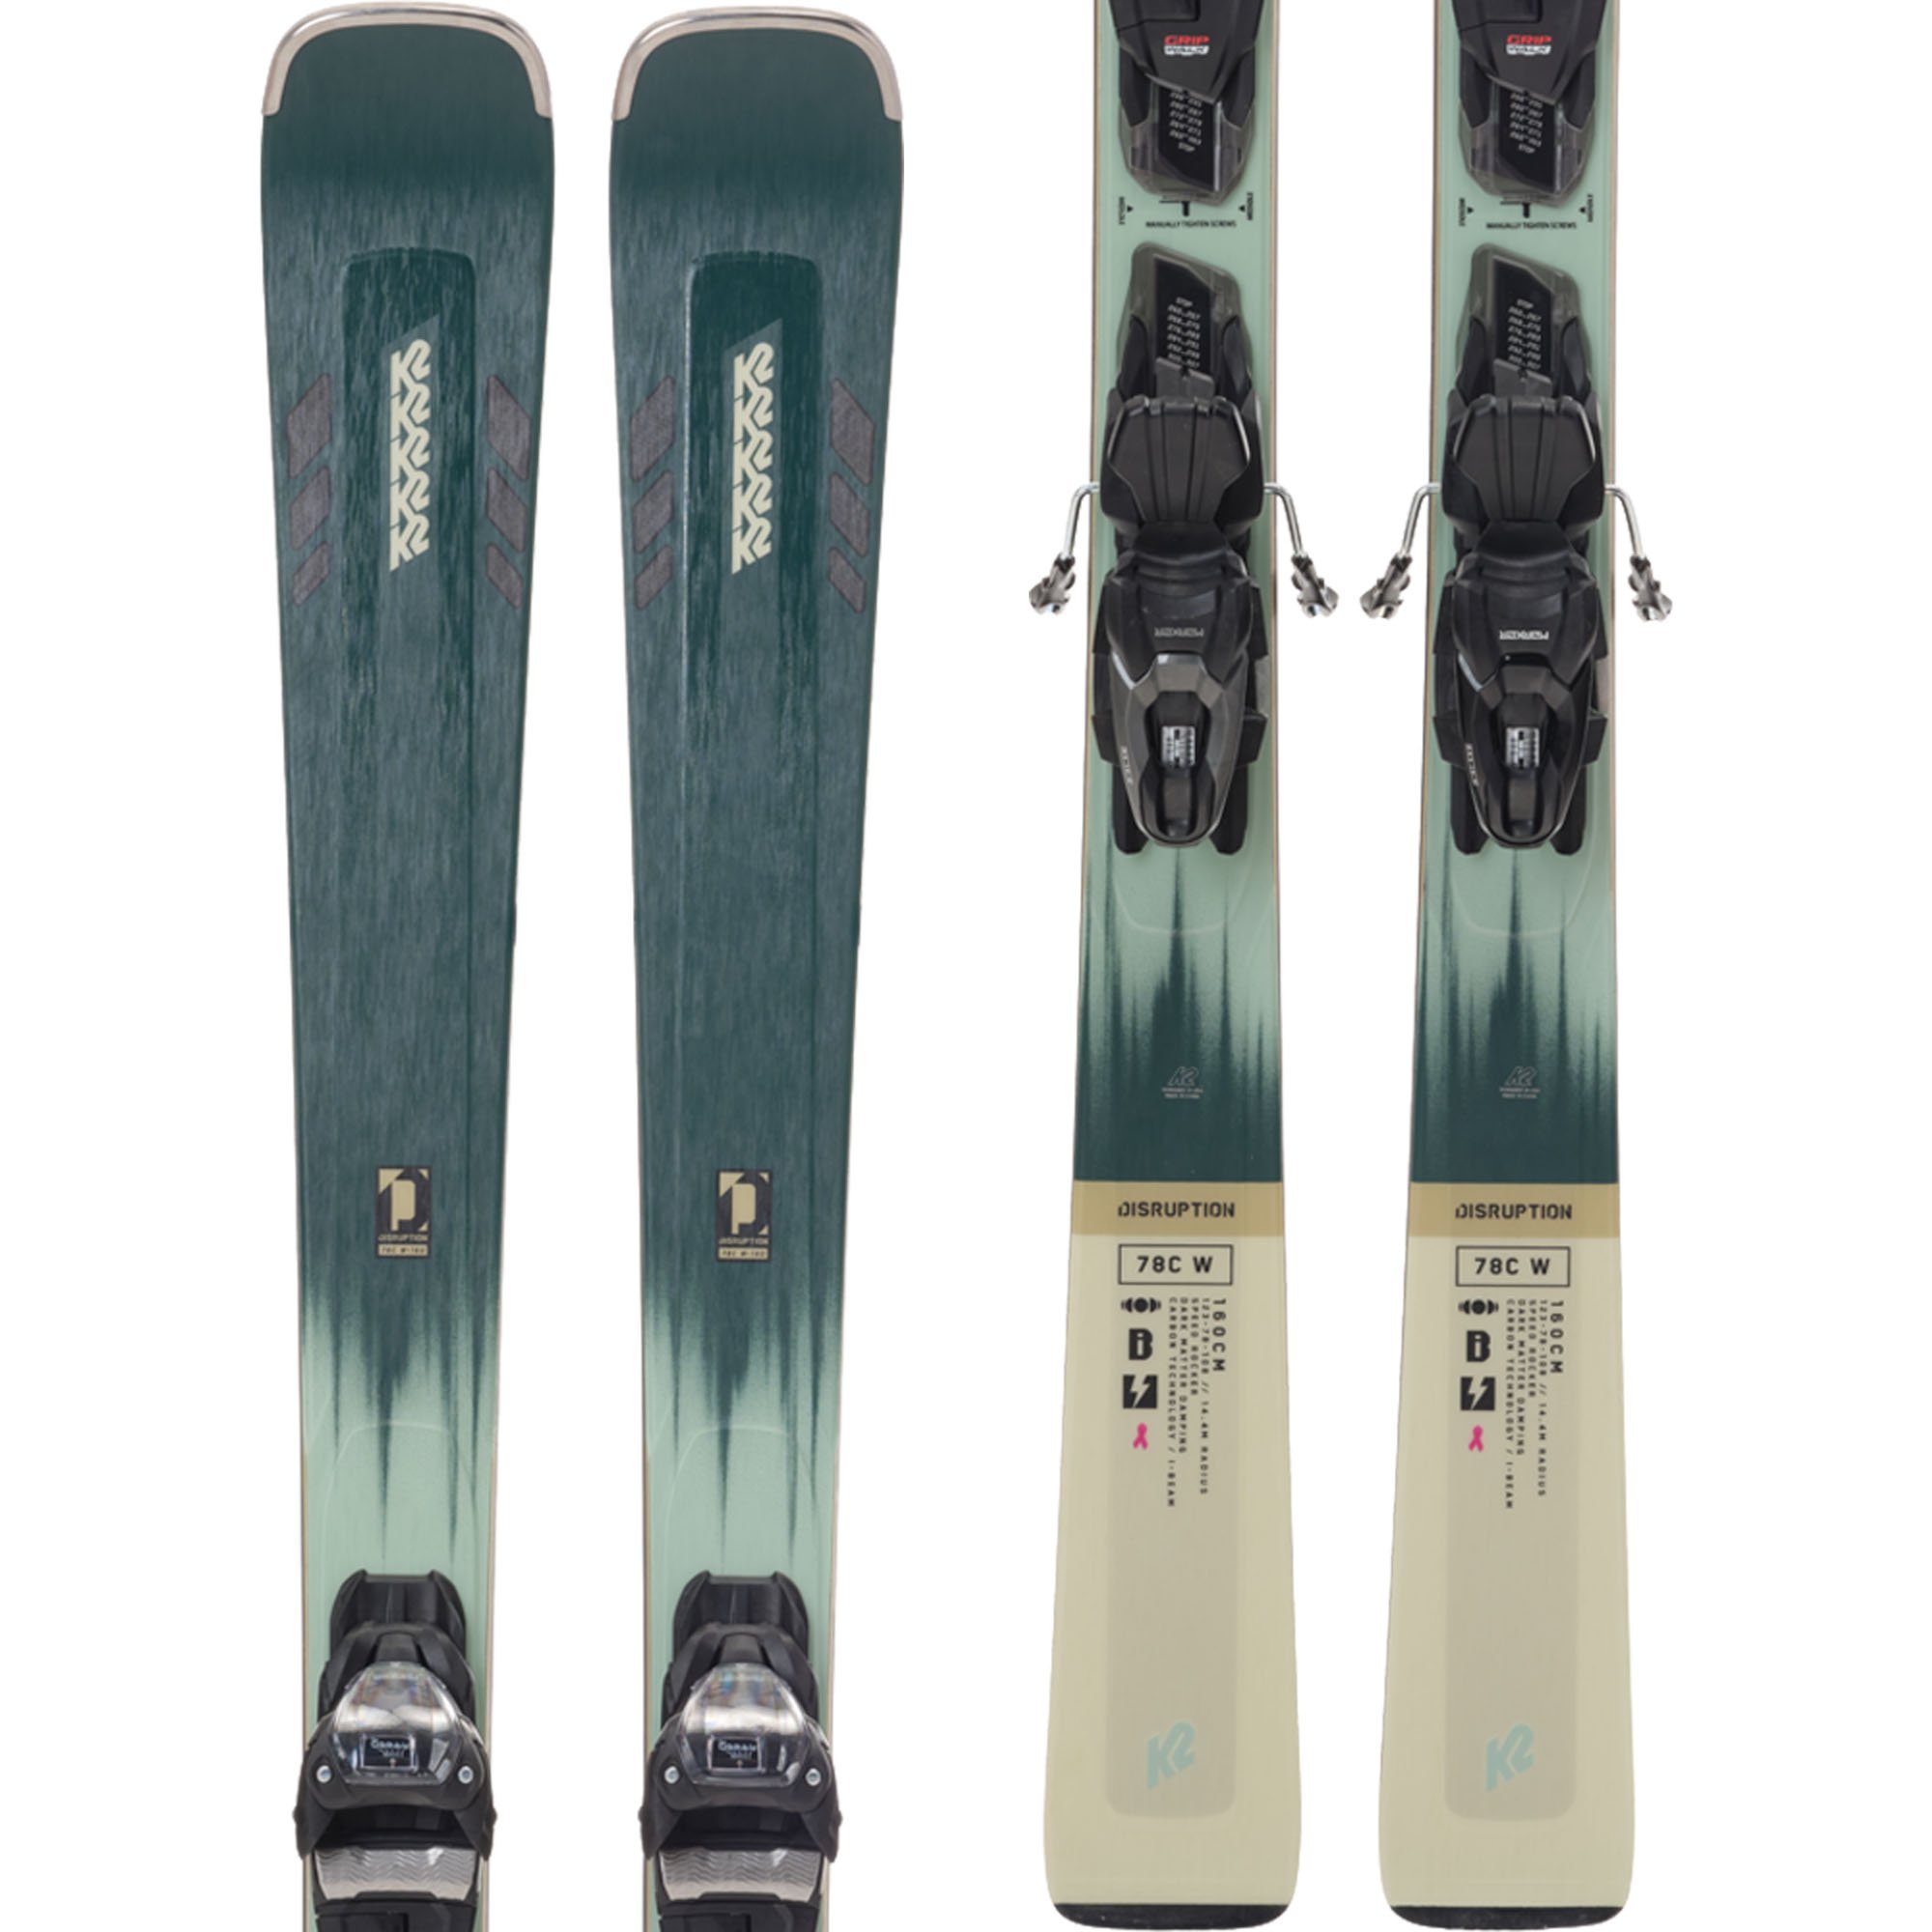 K2 Disruption 78C W - ER3 10 Compact Quikclik Skis